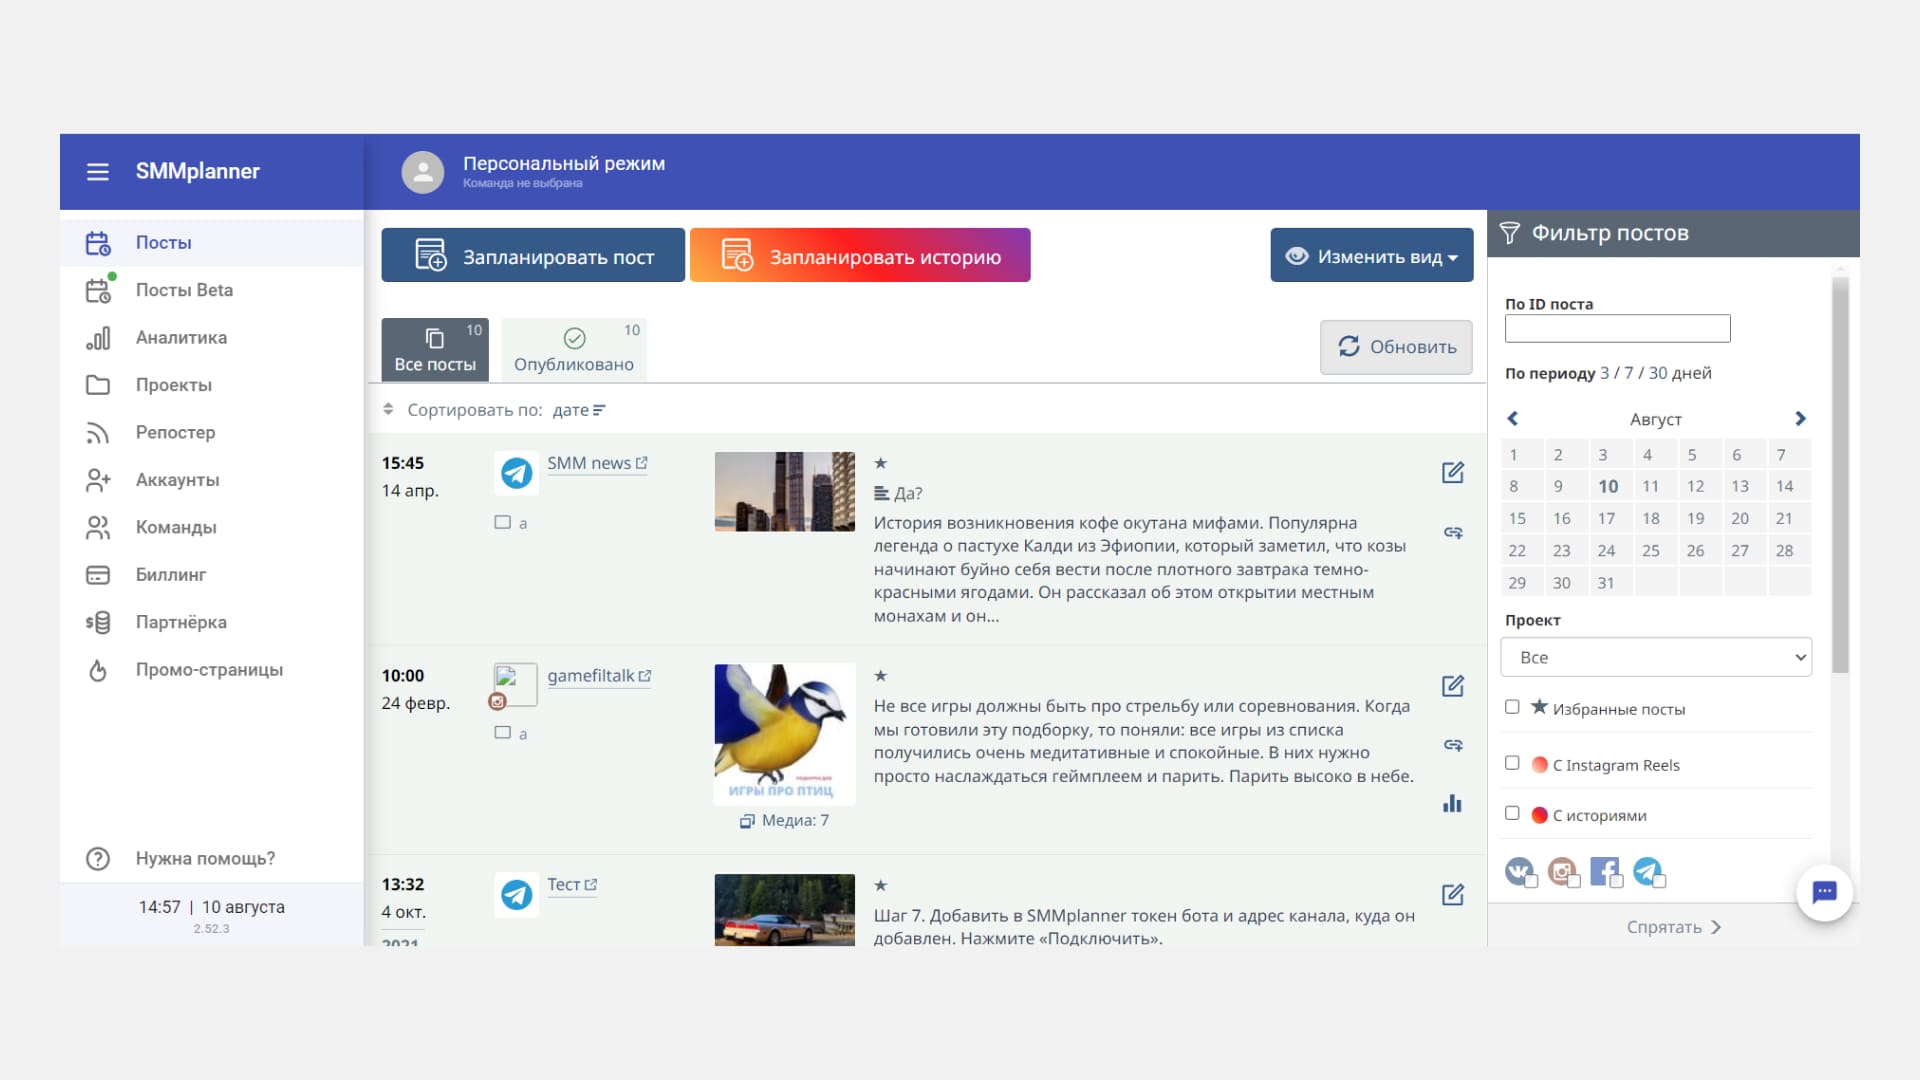 SMMplanner позволяет управлять контентом всех подключенных аккаунтов с одной страницы